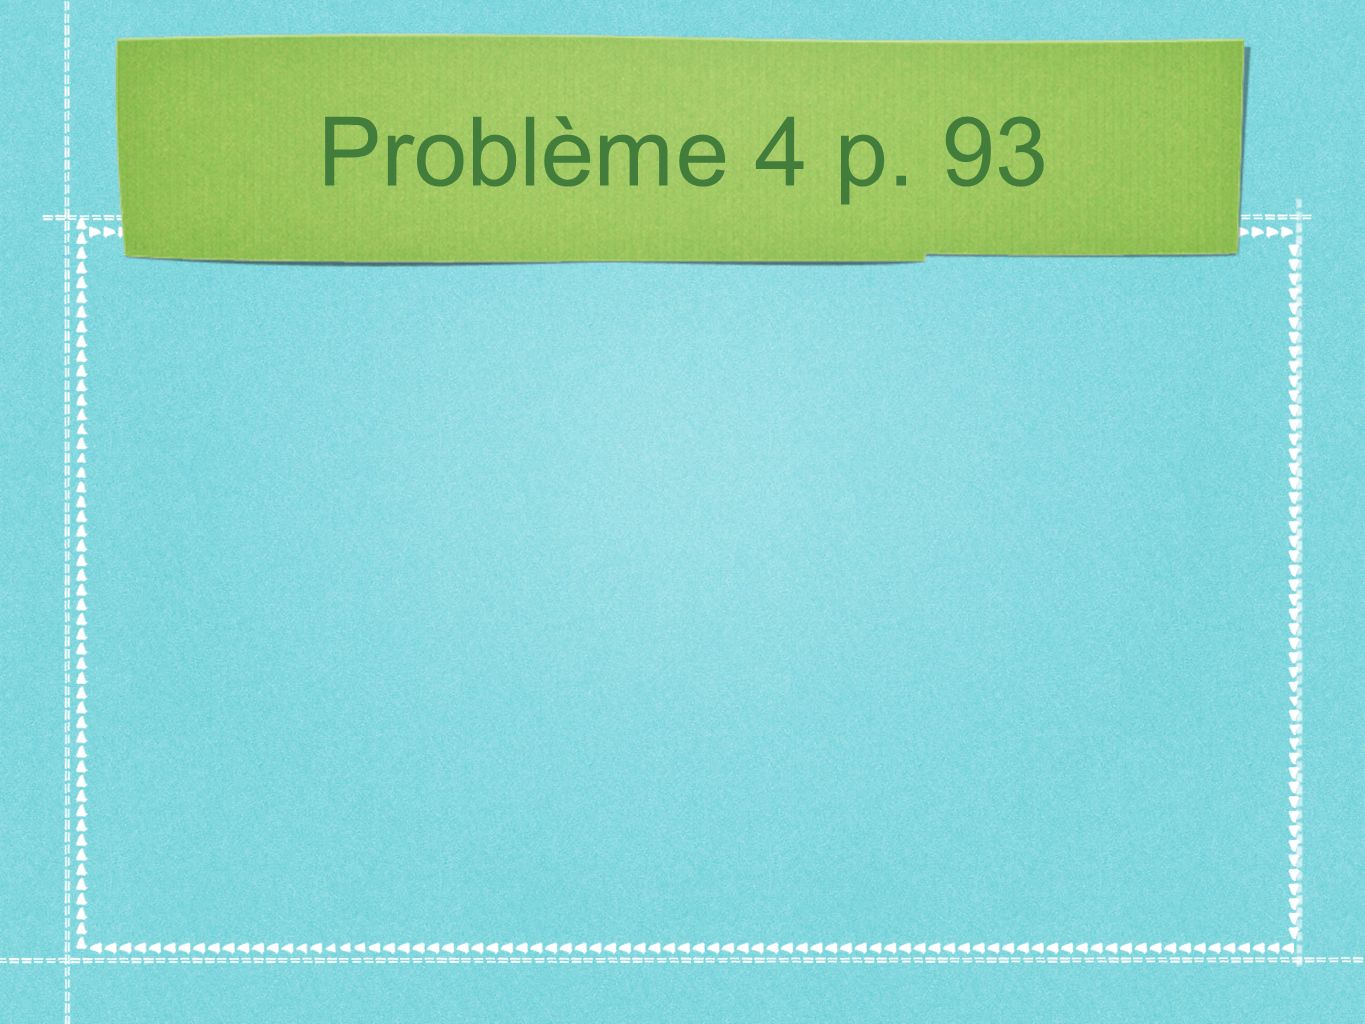 Problème 4 p. 93